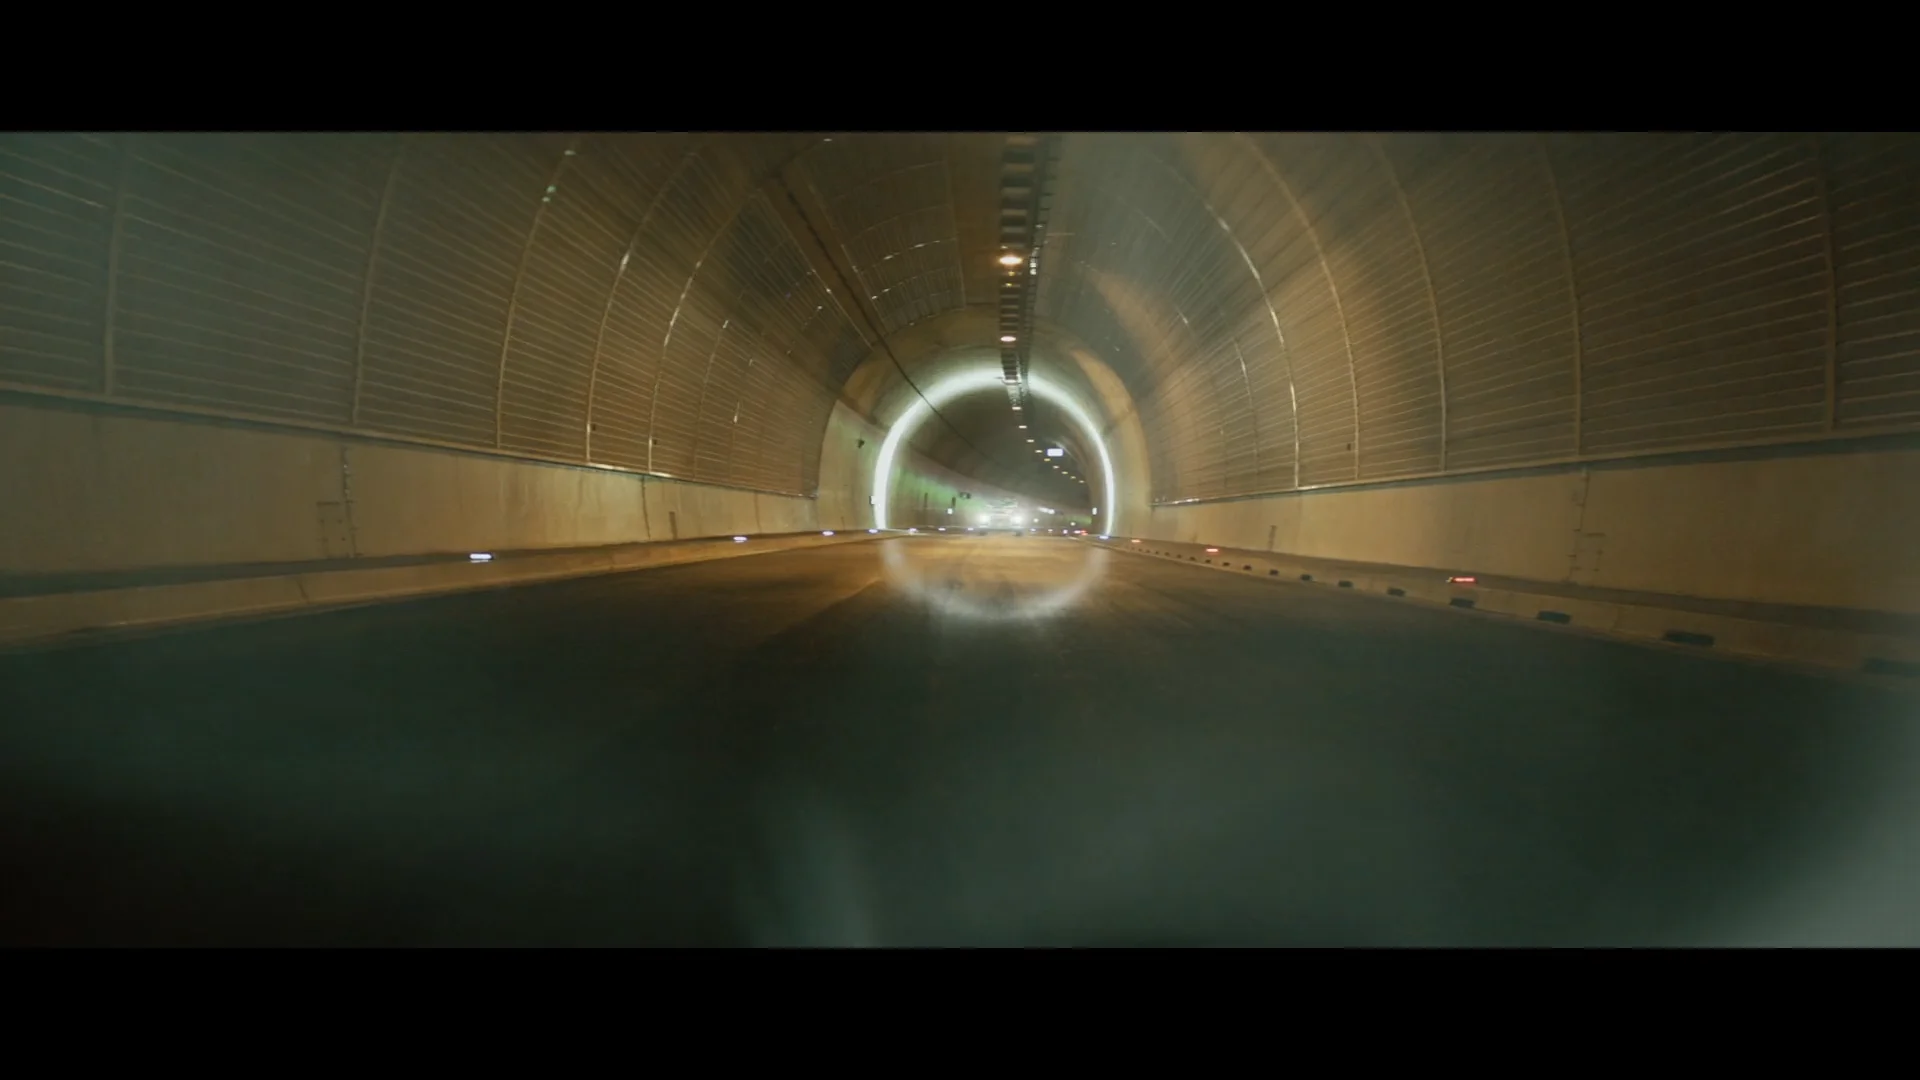 AUDI AOZ - Audi Original Zubehör - für die Familie on Vimeo